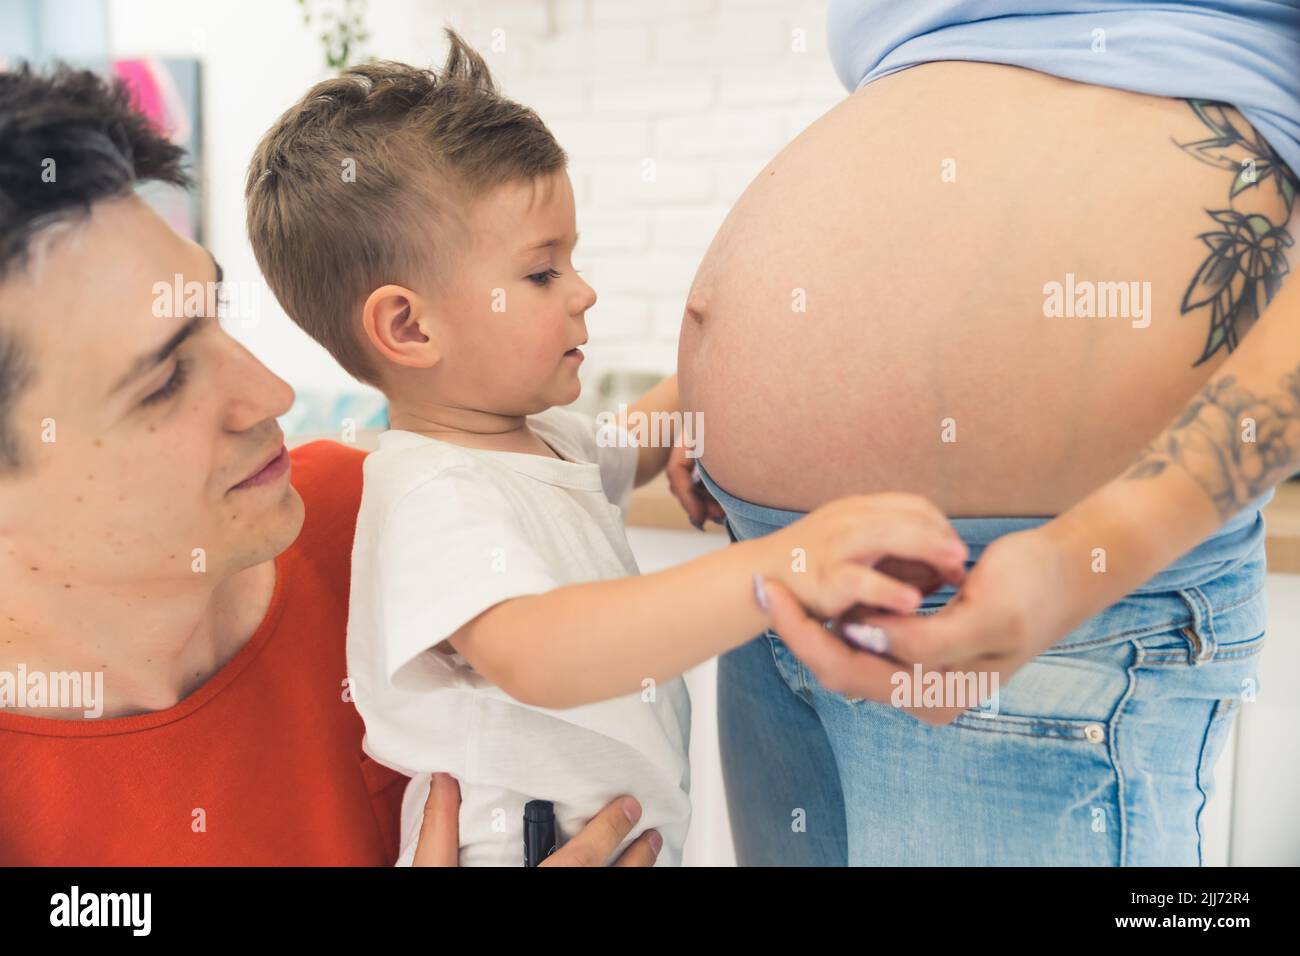 Famiglia di tre in attesa di un nuovo bambino. Adorabile ragazzo preschooler che guarda il ventre incinta della madre con stupore. Foto di alta qualità Foto Stock